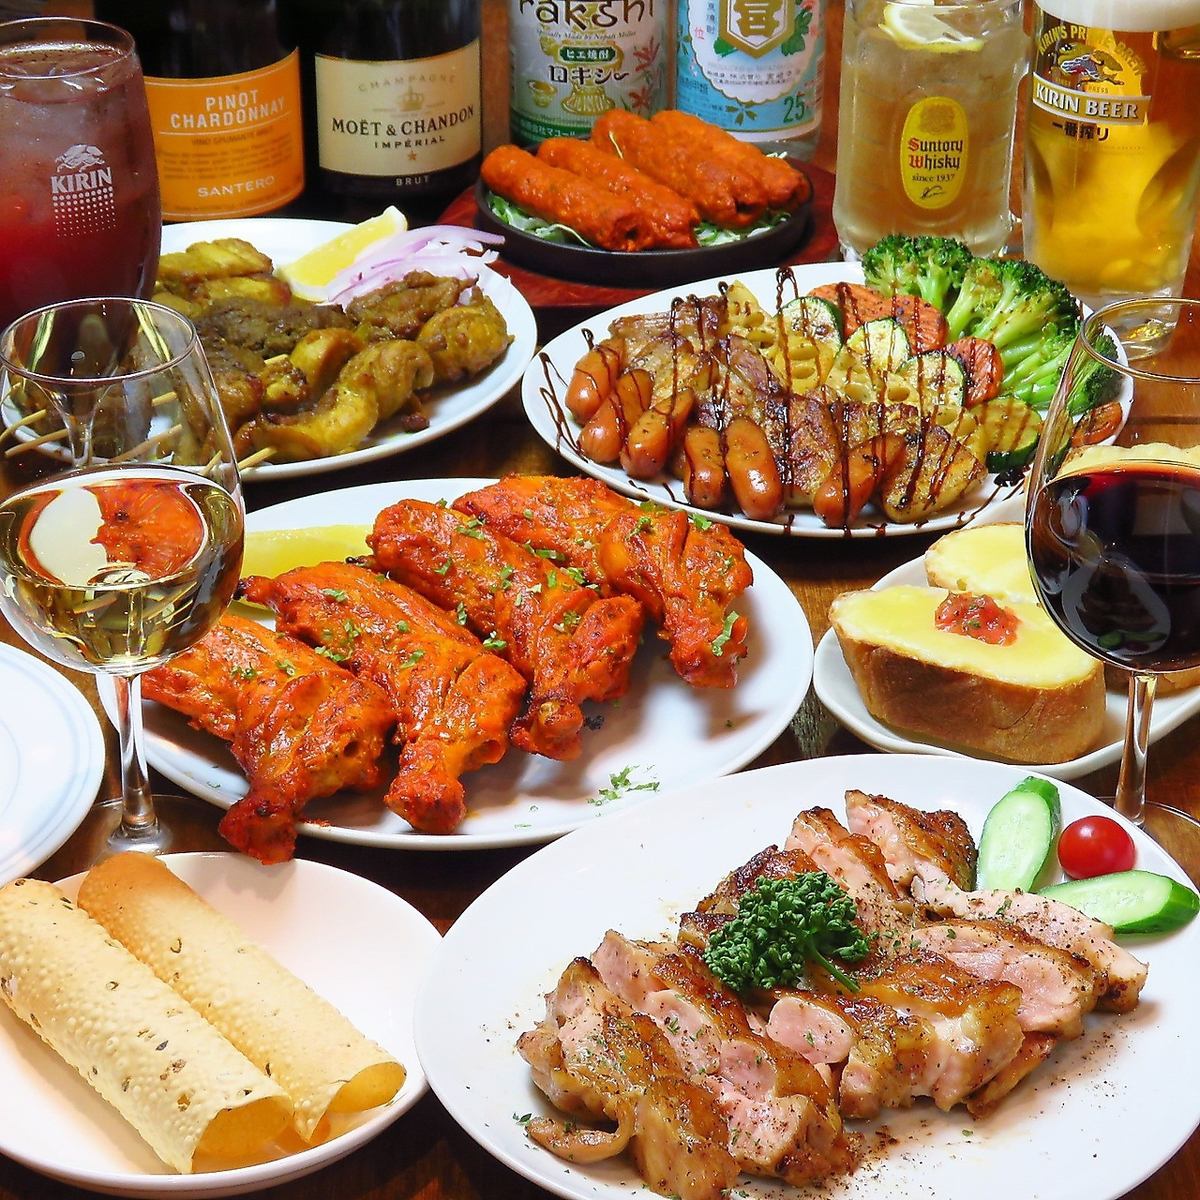 可以品尝正宗民族料理和日本料理的亚洲居酒屋！